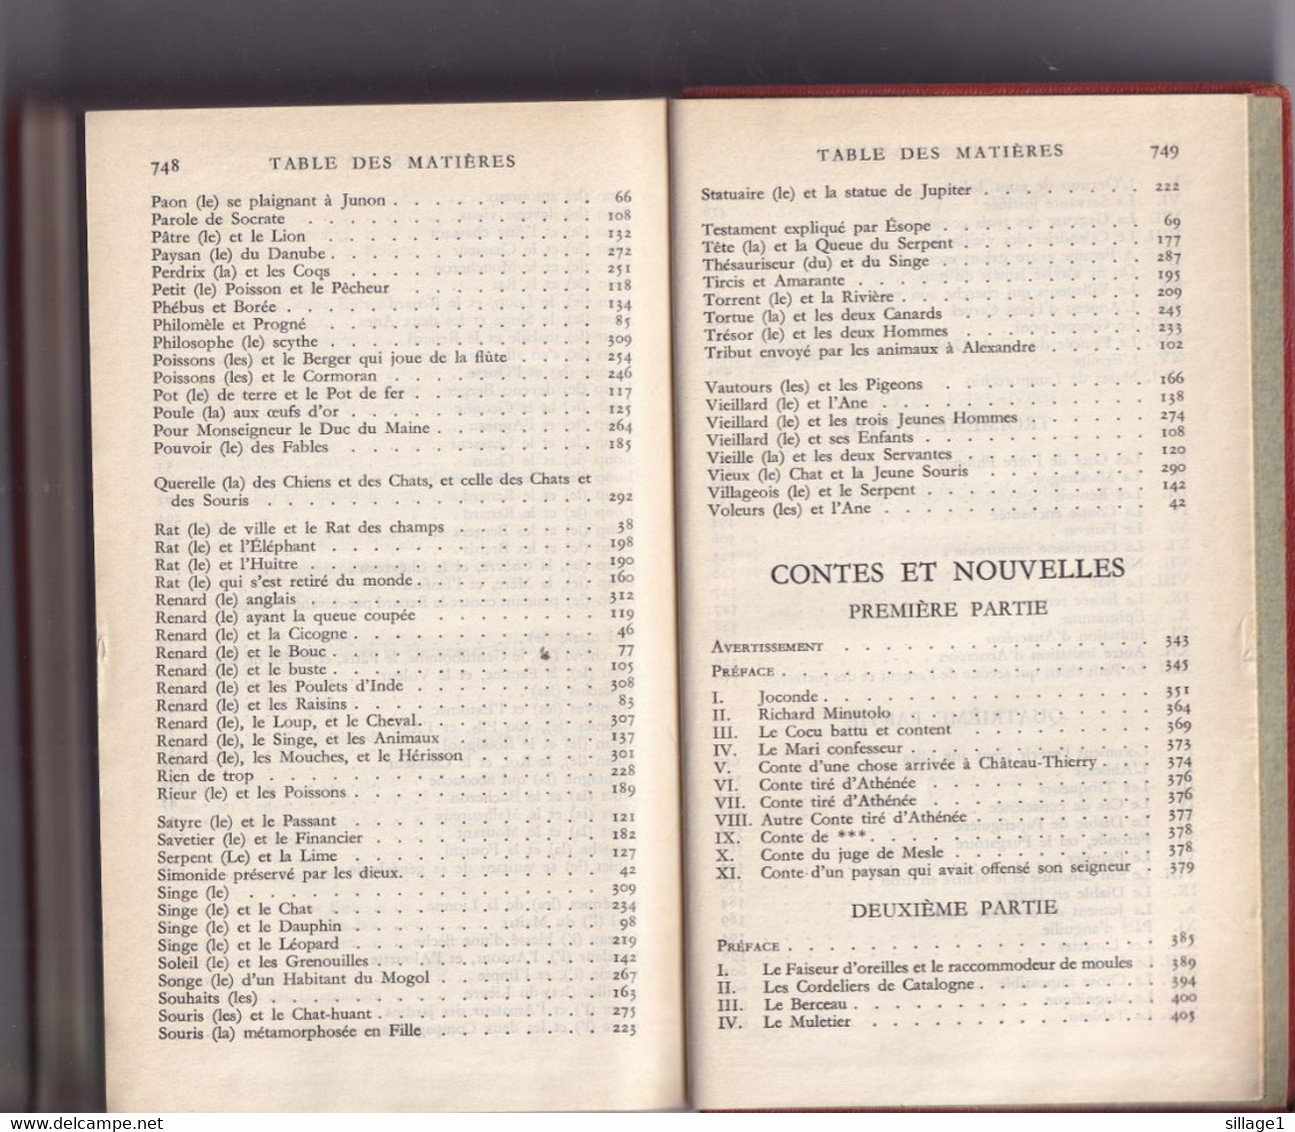 La Fontaine Fables et Contes et Nouvelles NRF Bibliothèque de la Pléiade N°10 20 juillet  1939 RARE TOP TEN